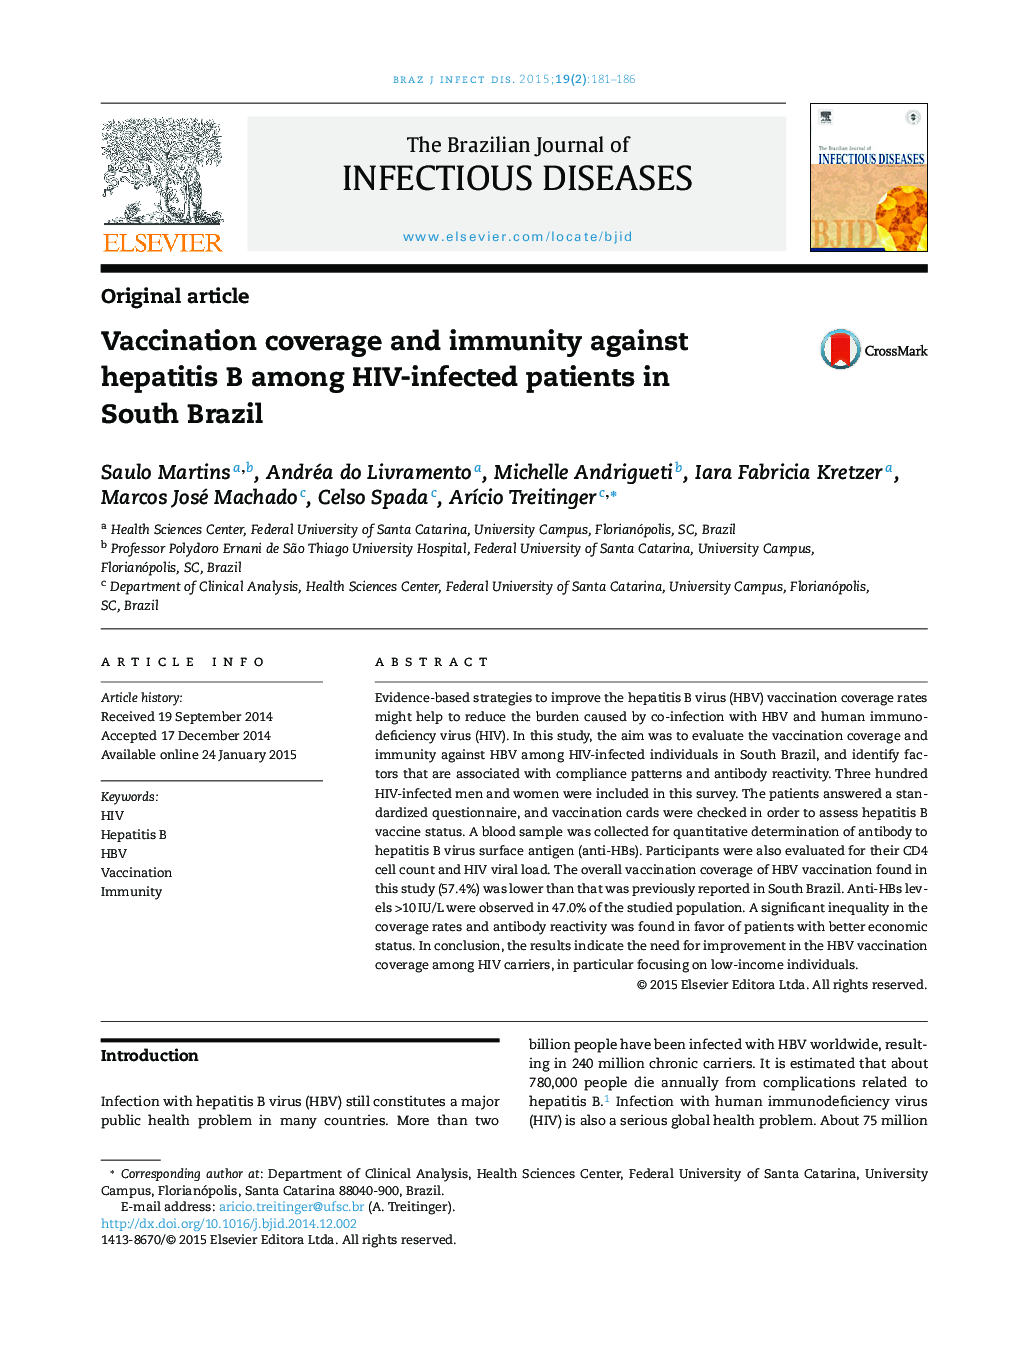 پوشش واکسیناسیون و ایمنی علیه هپاتیت B در بیماران مبتلا به HIV در برزیل جنوبی